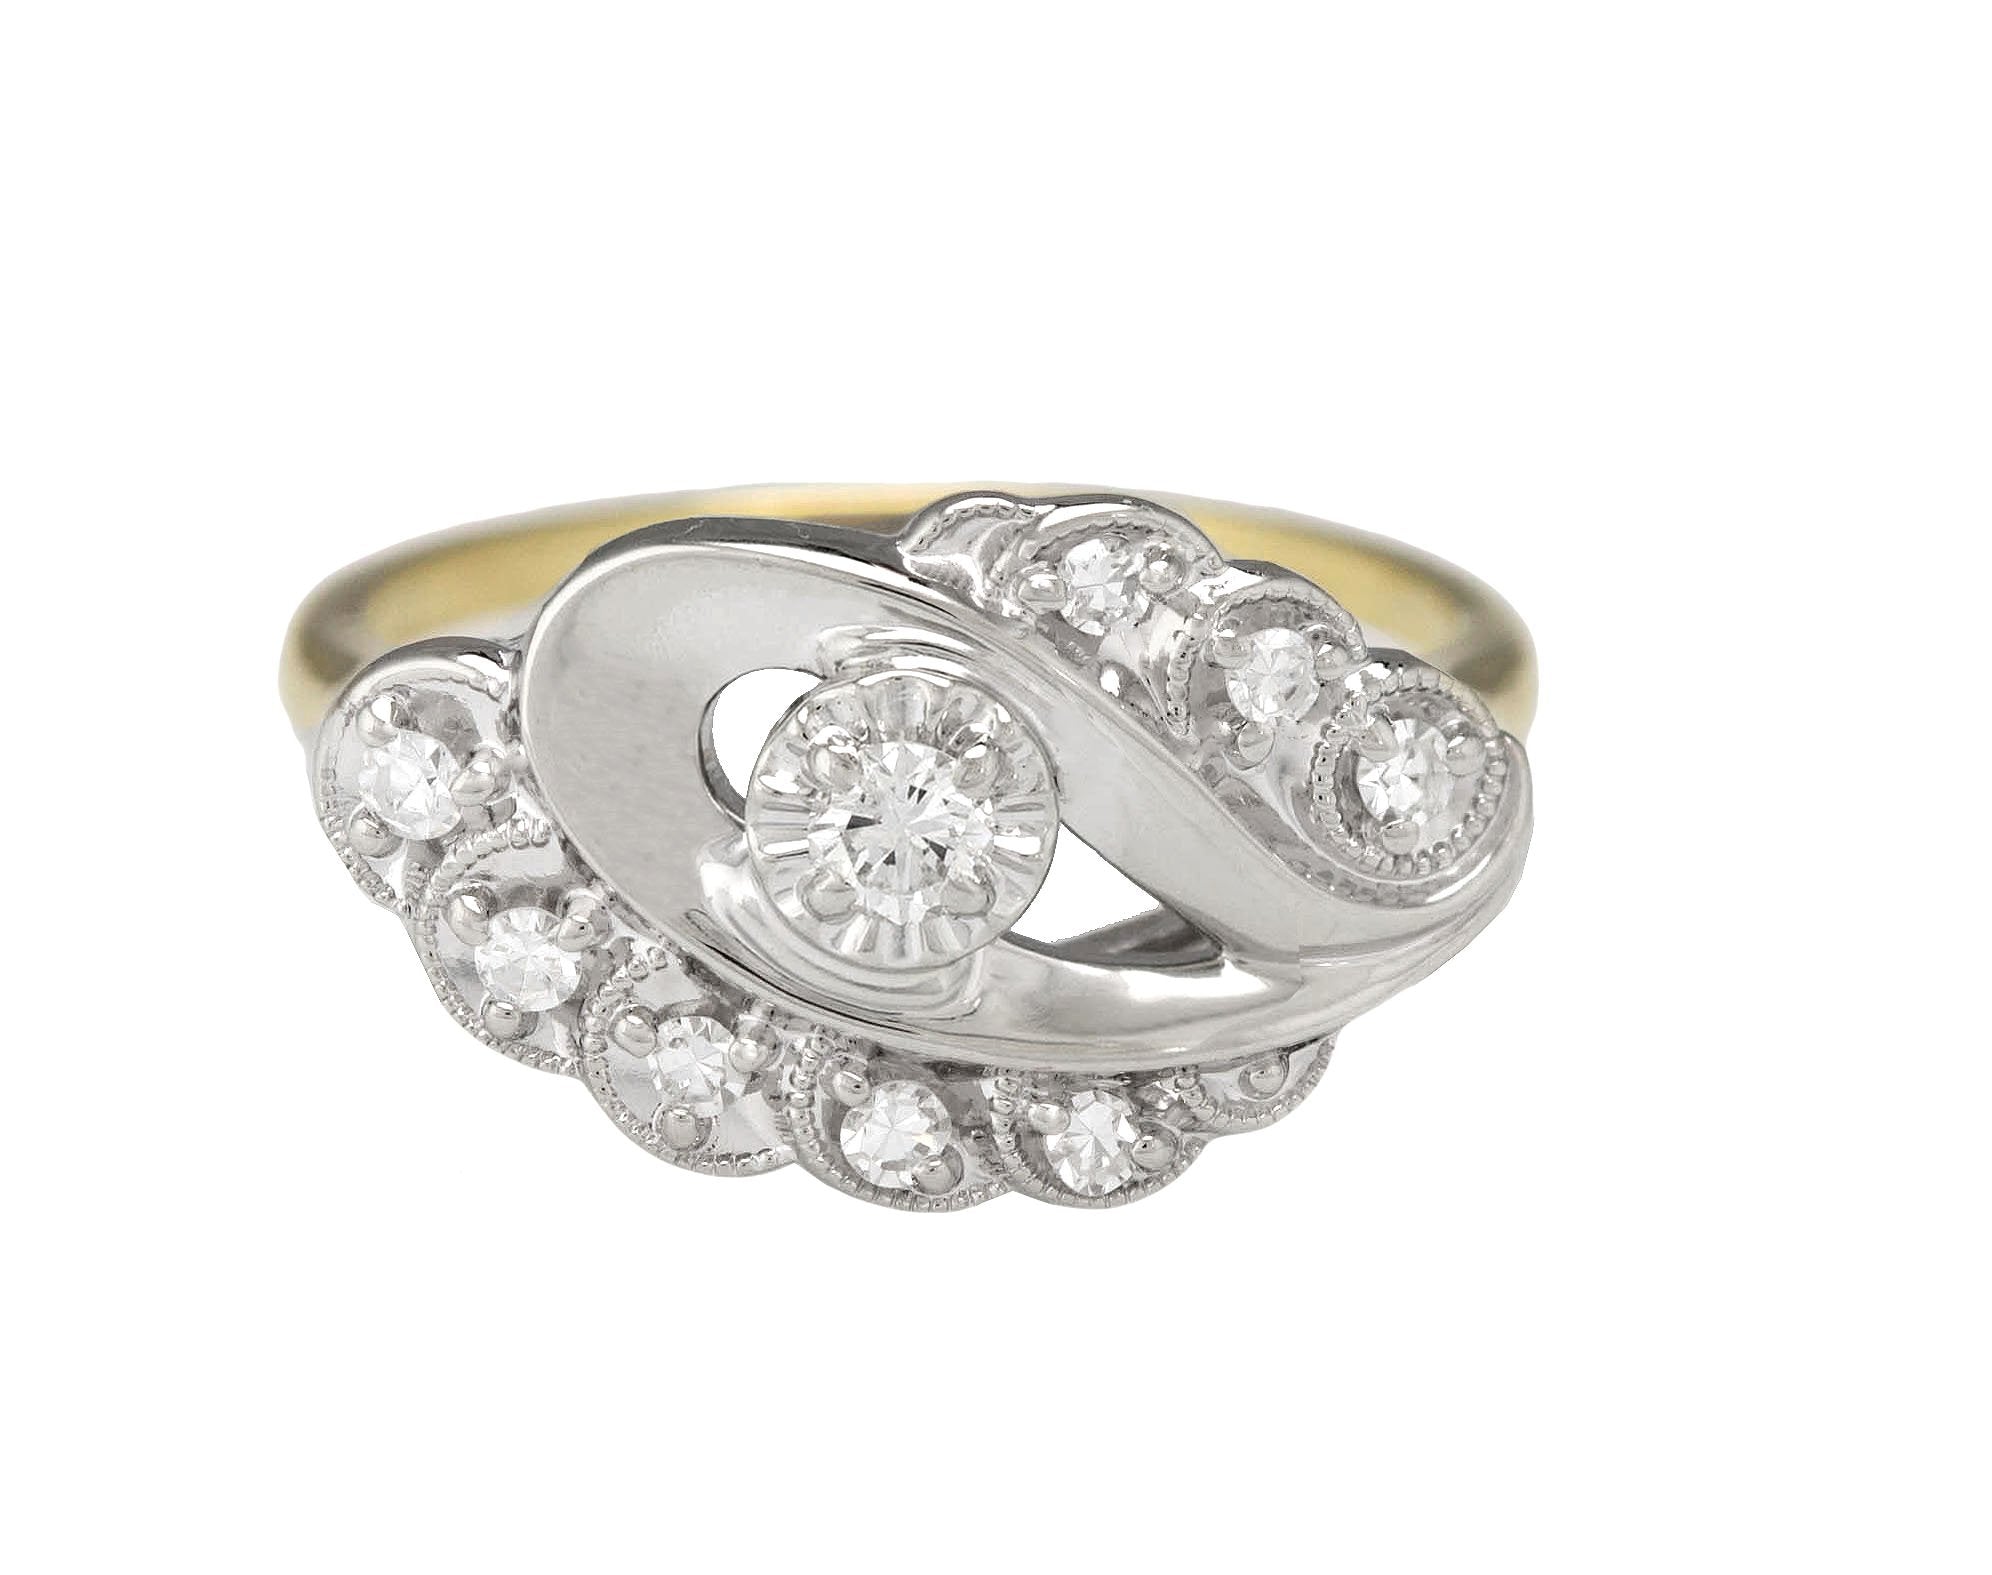 Ladies 14K White/Yellow Gold Two-Tone 0.22ctw Diamond Ornate Cocktail Ring